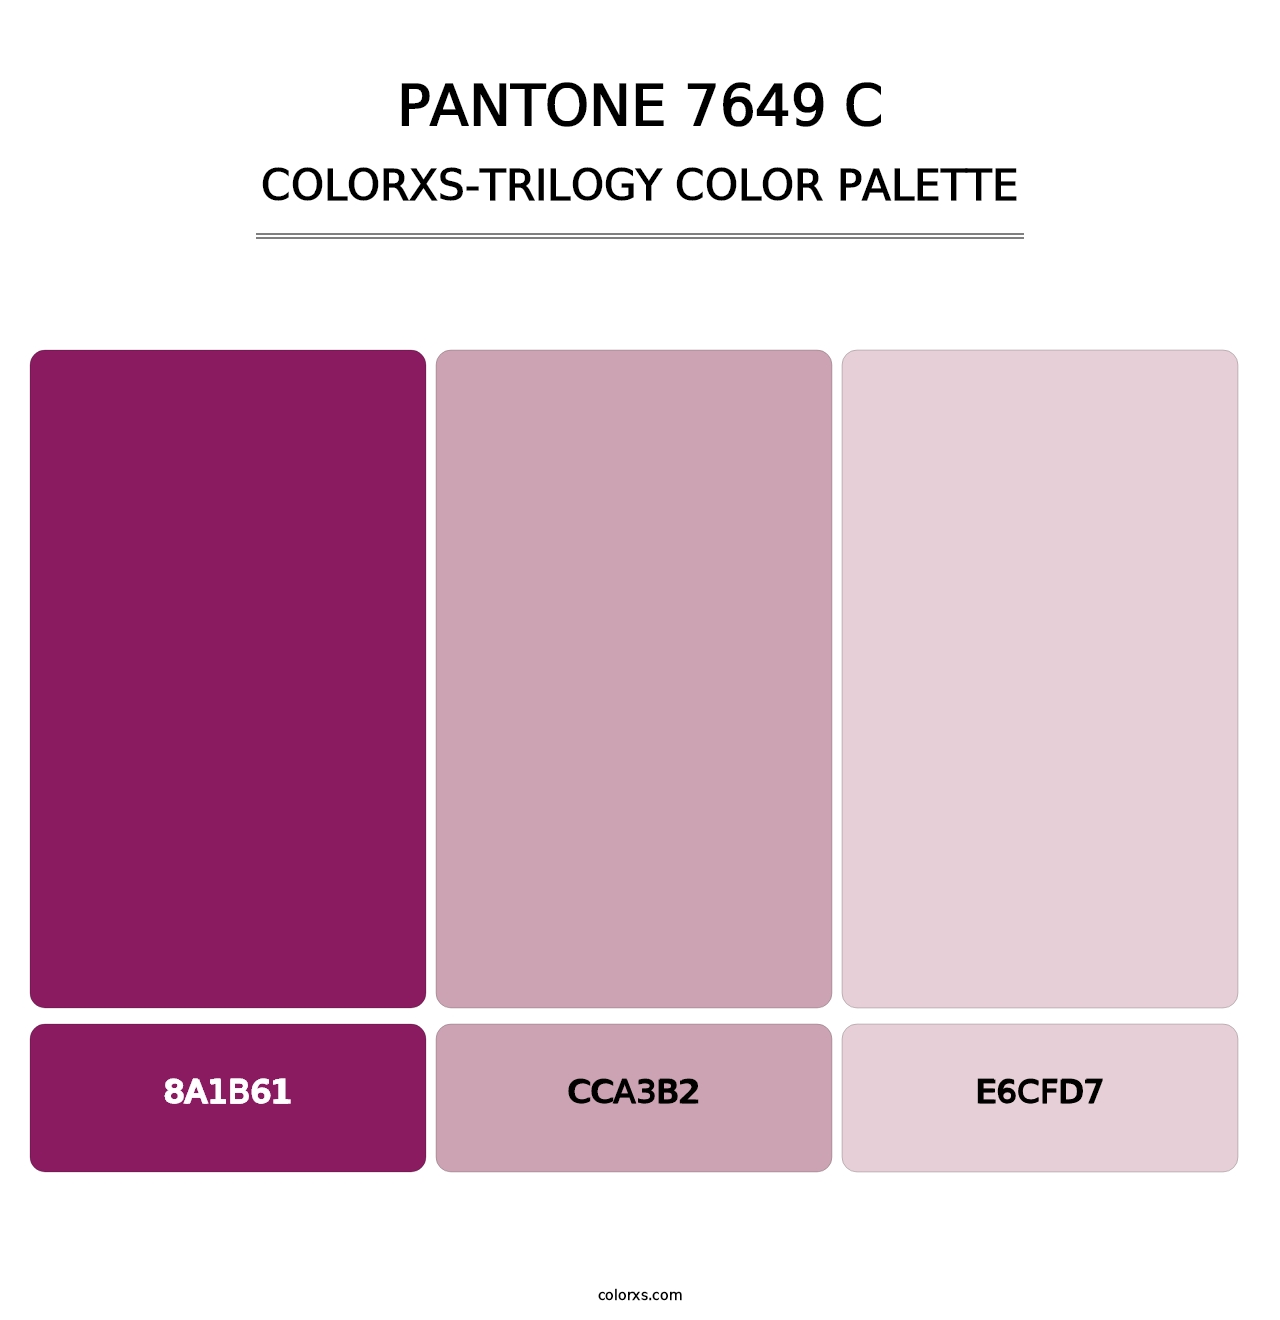 PANTONE 7649 C - Colorxs Trilogy Palette